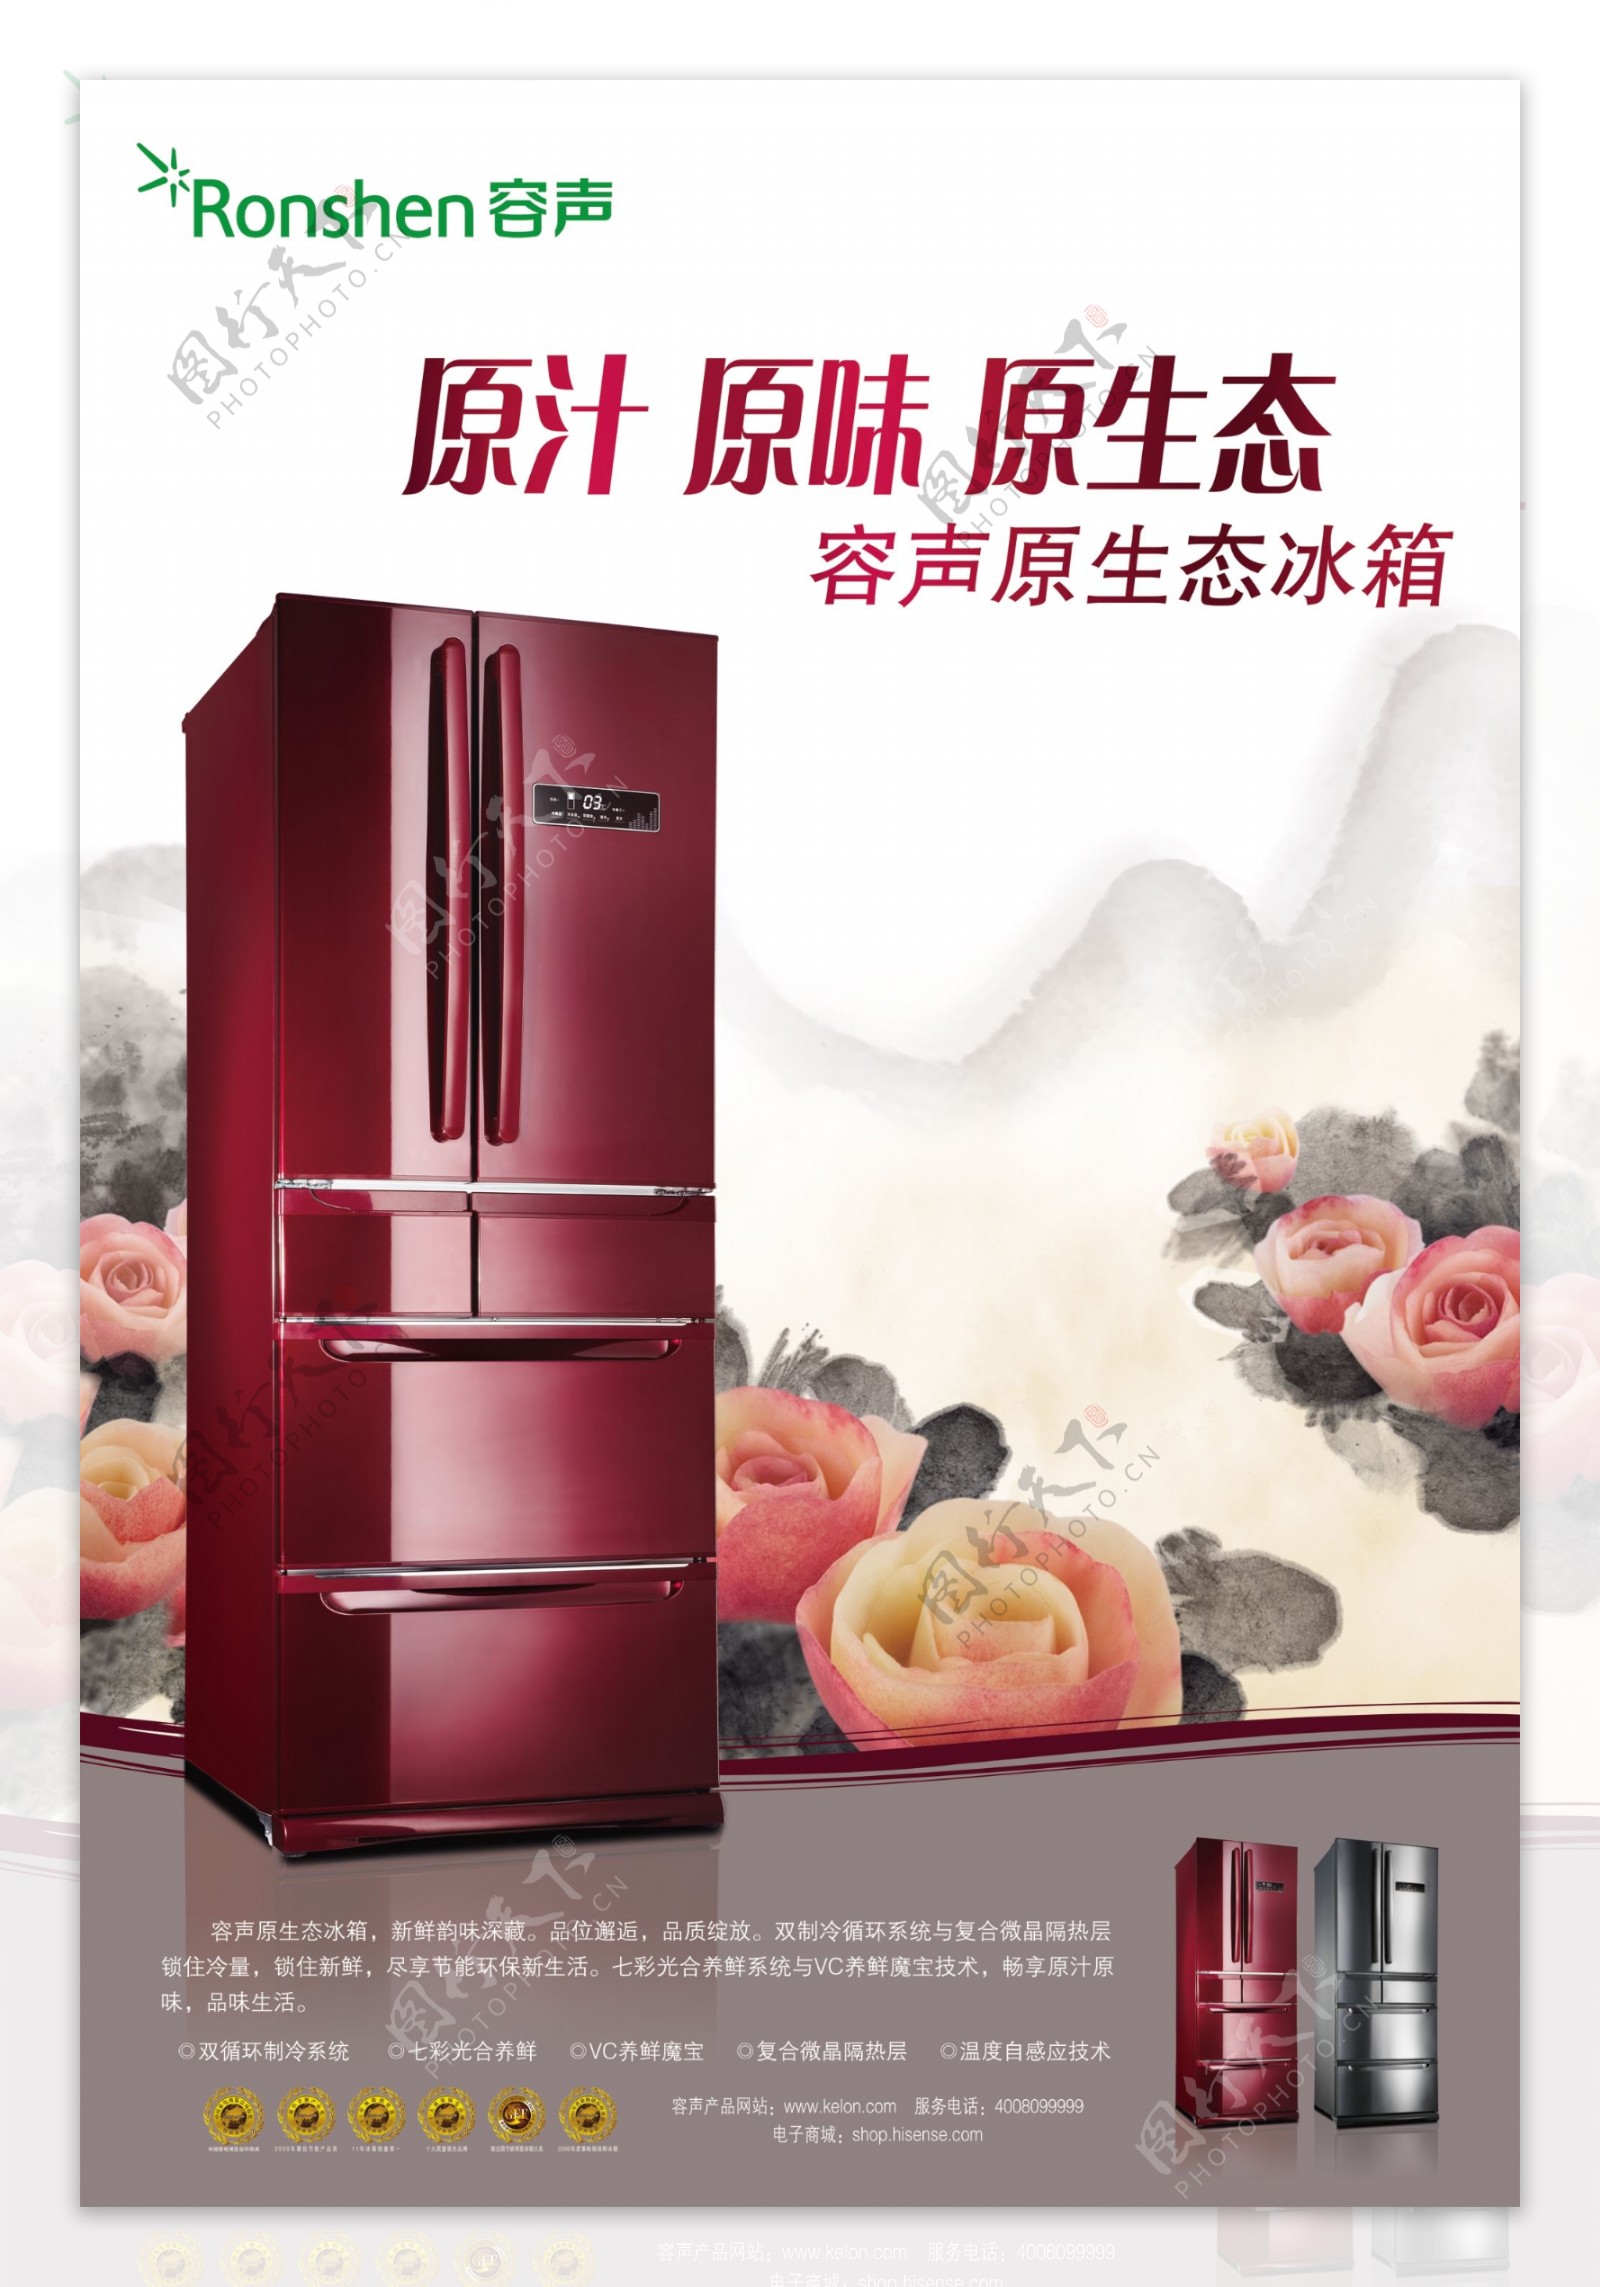 容声源生态冰箱品牌广告设计图片